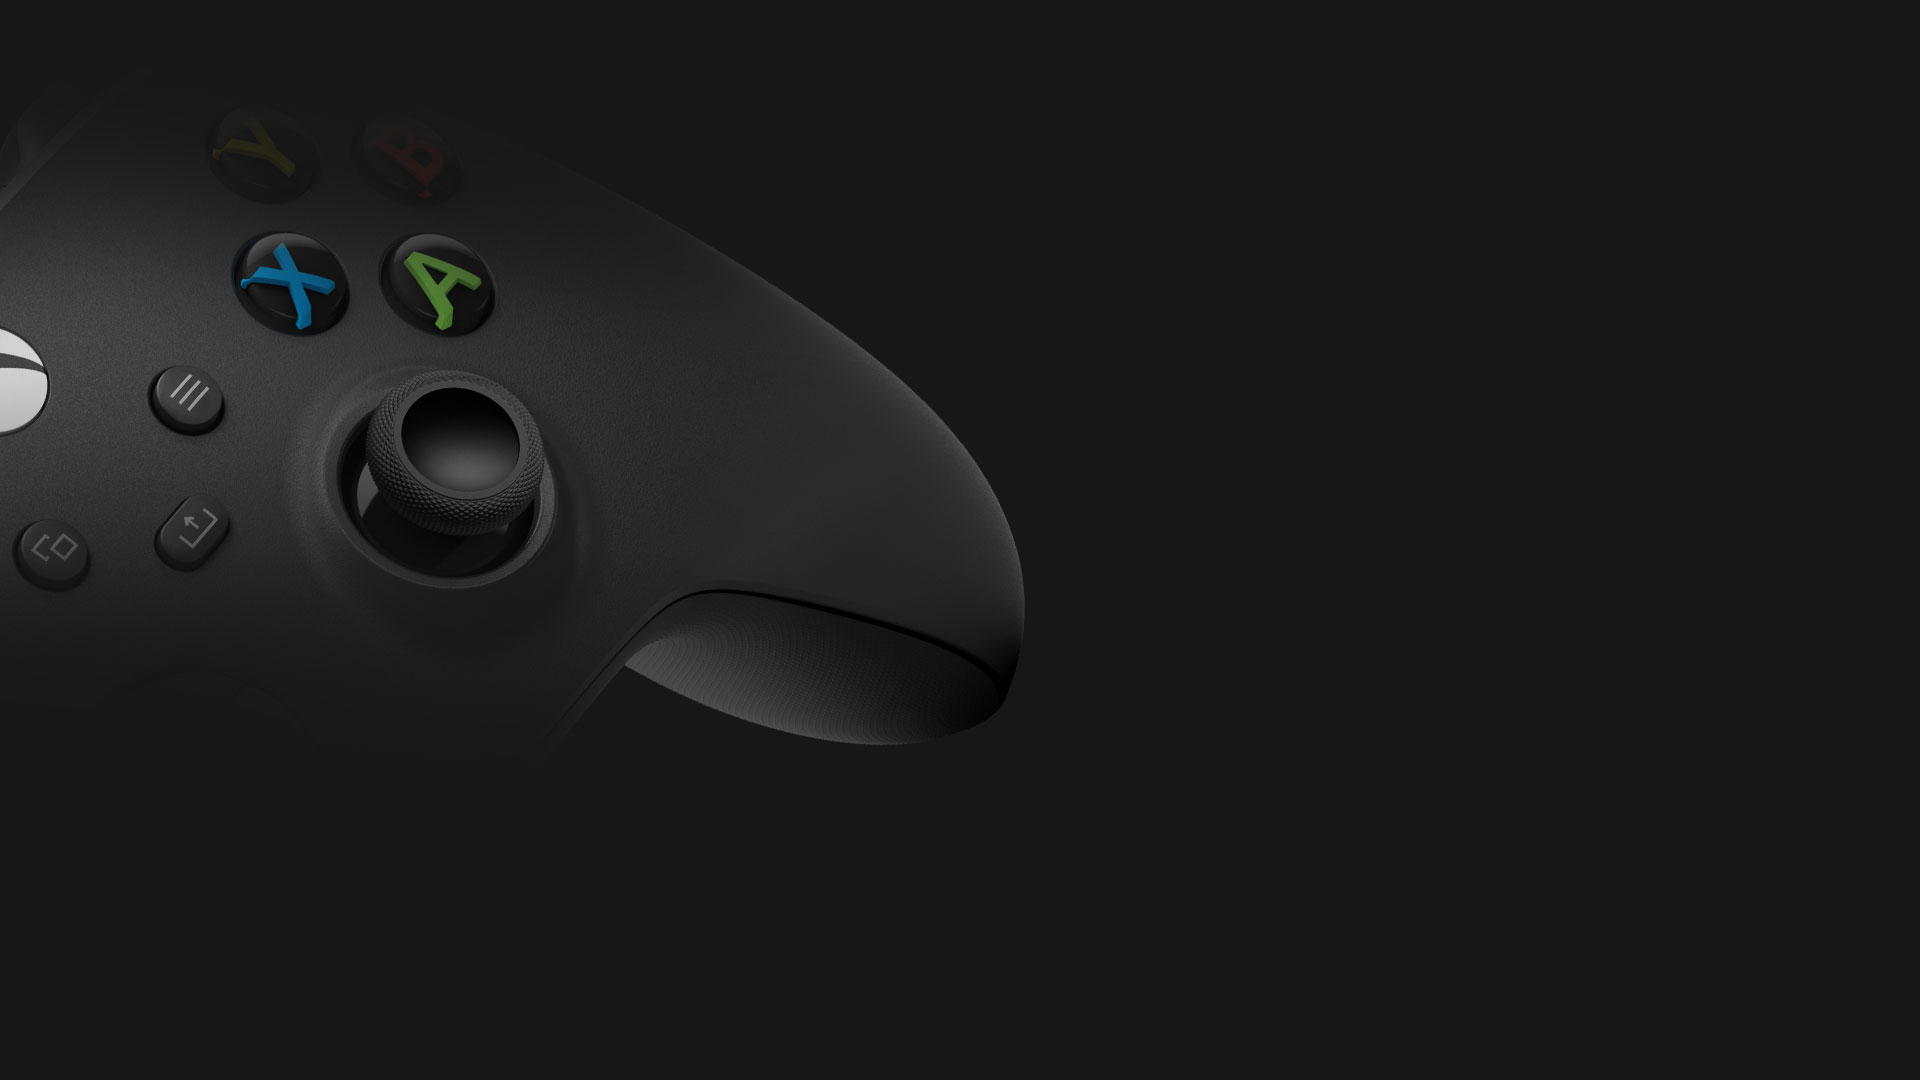 Xbox無線控制器的側角視圖 - 碳黑色